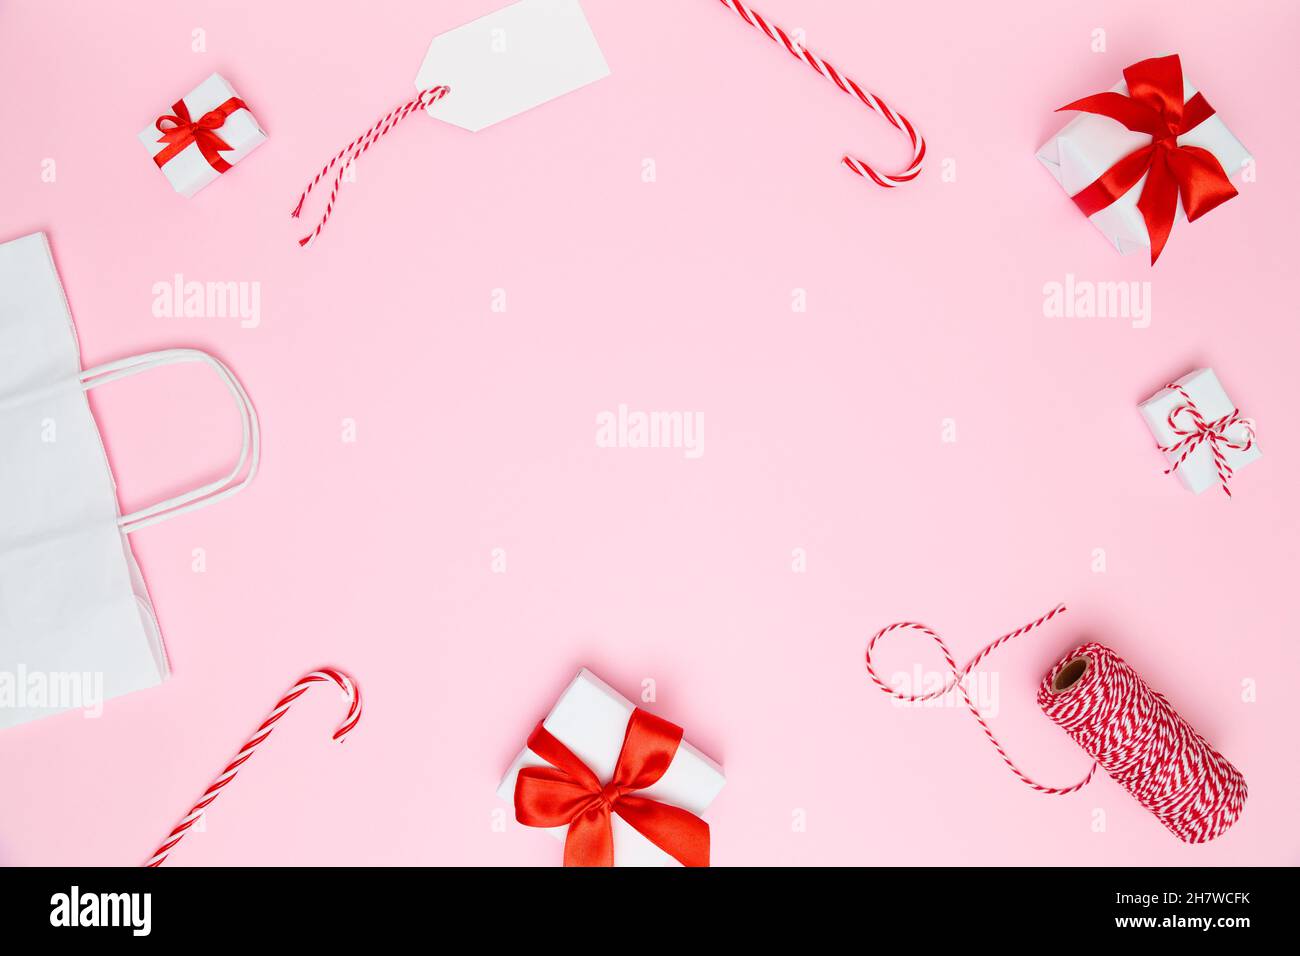 Natale, Capodanno sfondo accogliente. Scatole regalo bianche fatte a mano con archi rossi, sacchetto di carta, caramelle, nastro rosso, biglietto da visita su sfondo rosa pastello. Foto Stock